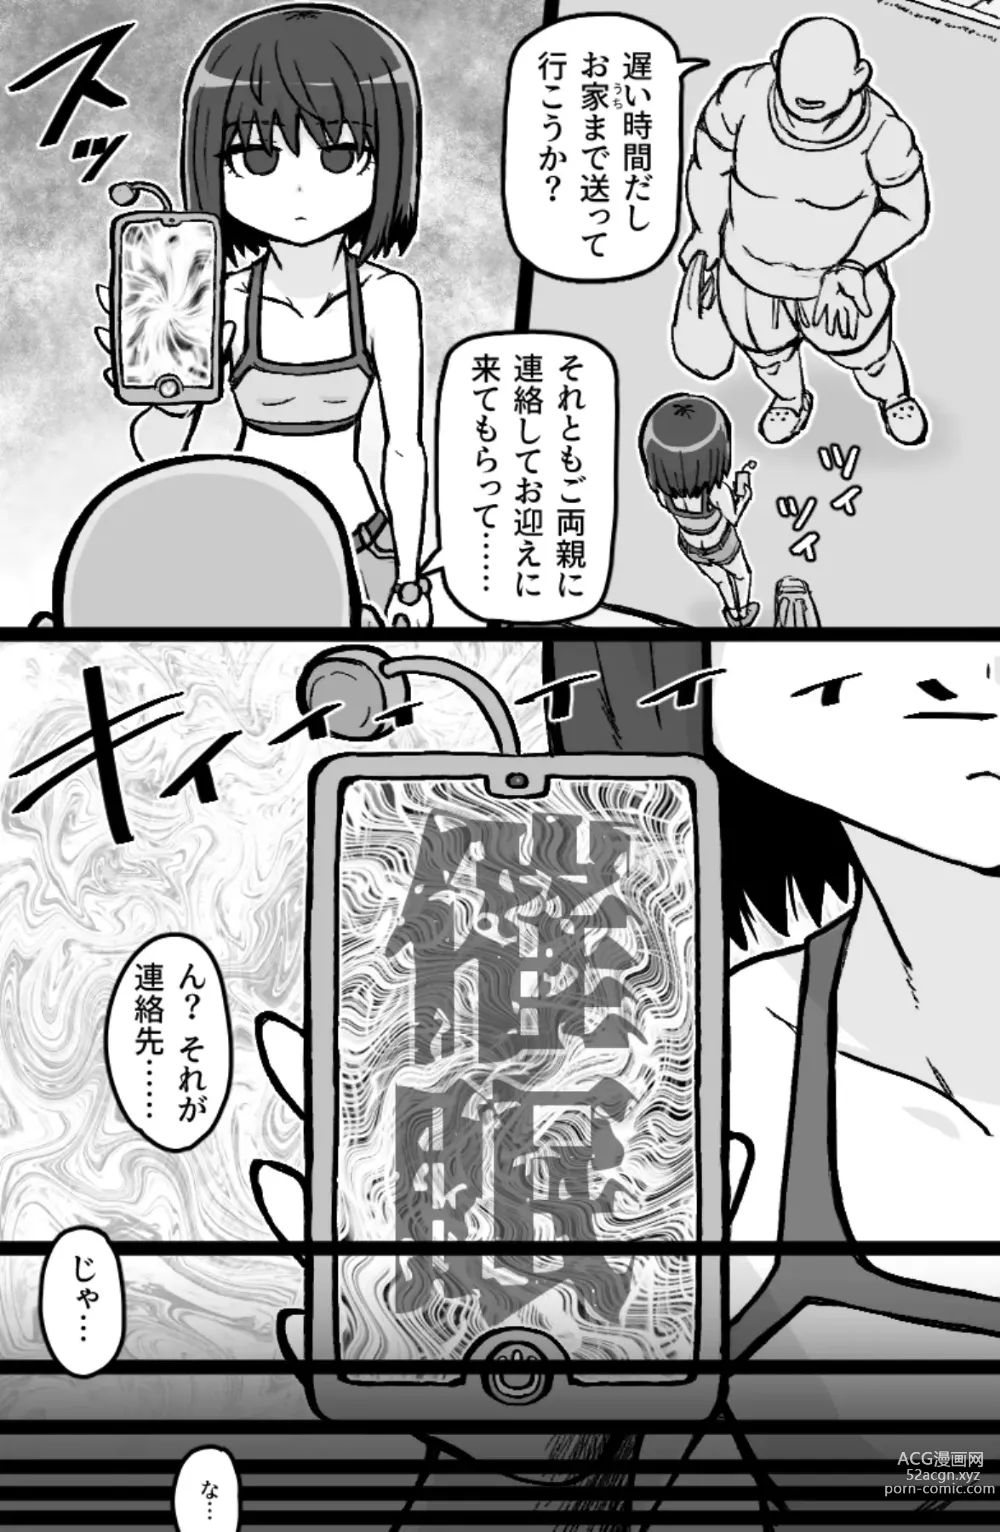 Page 4 of doujinshi Jonokuchi Replay